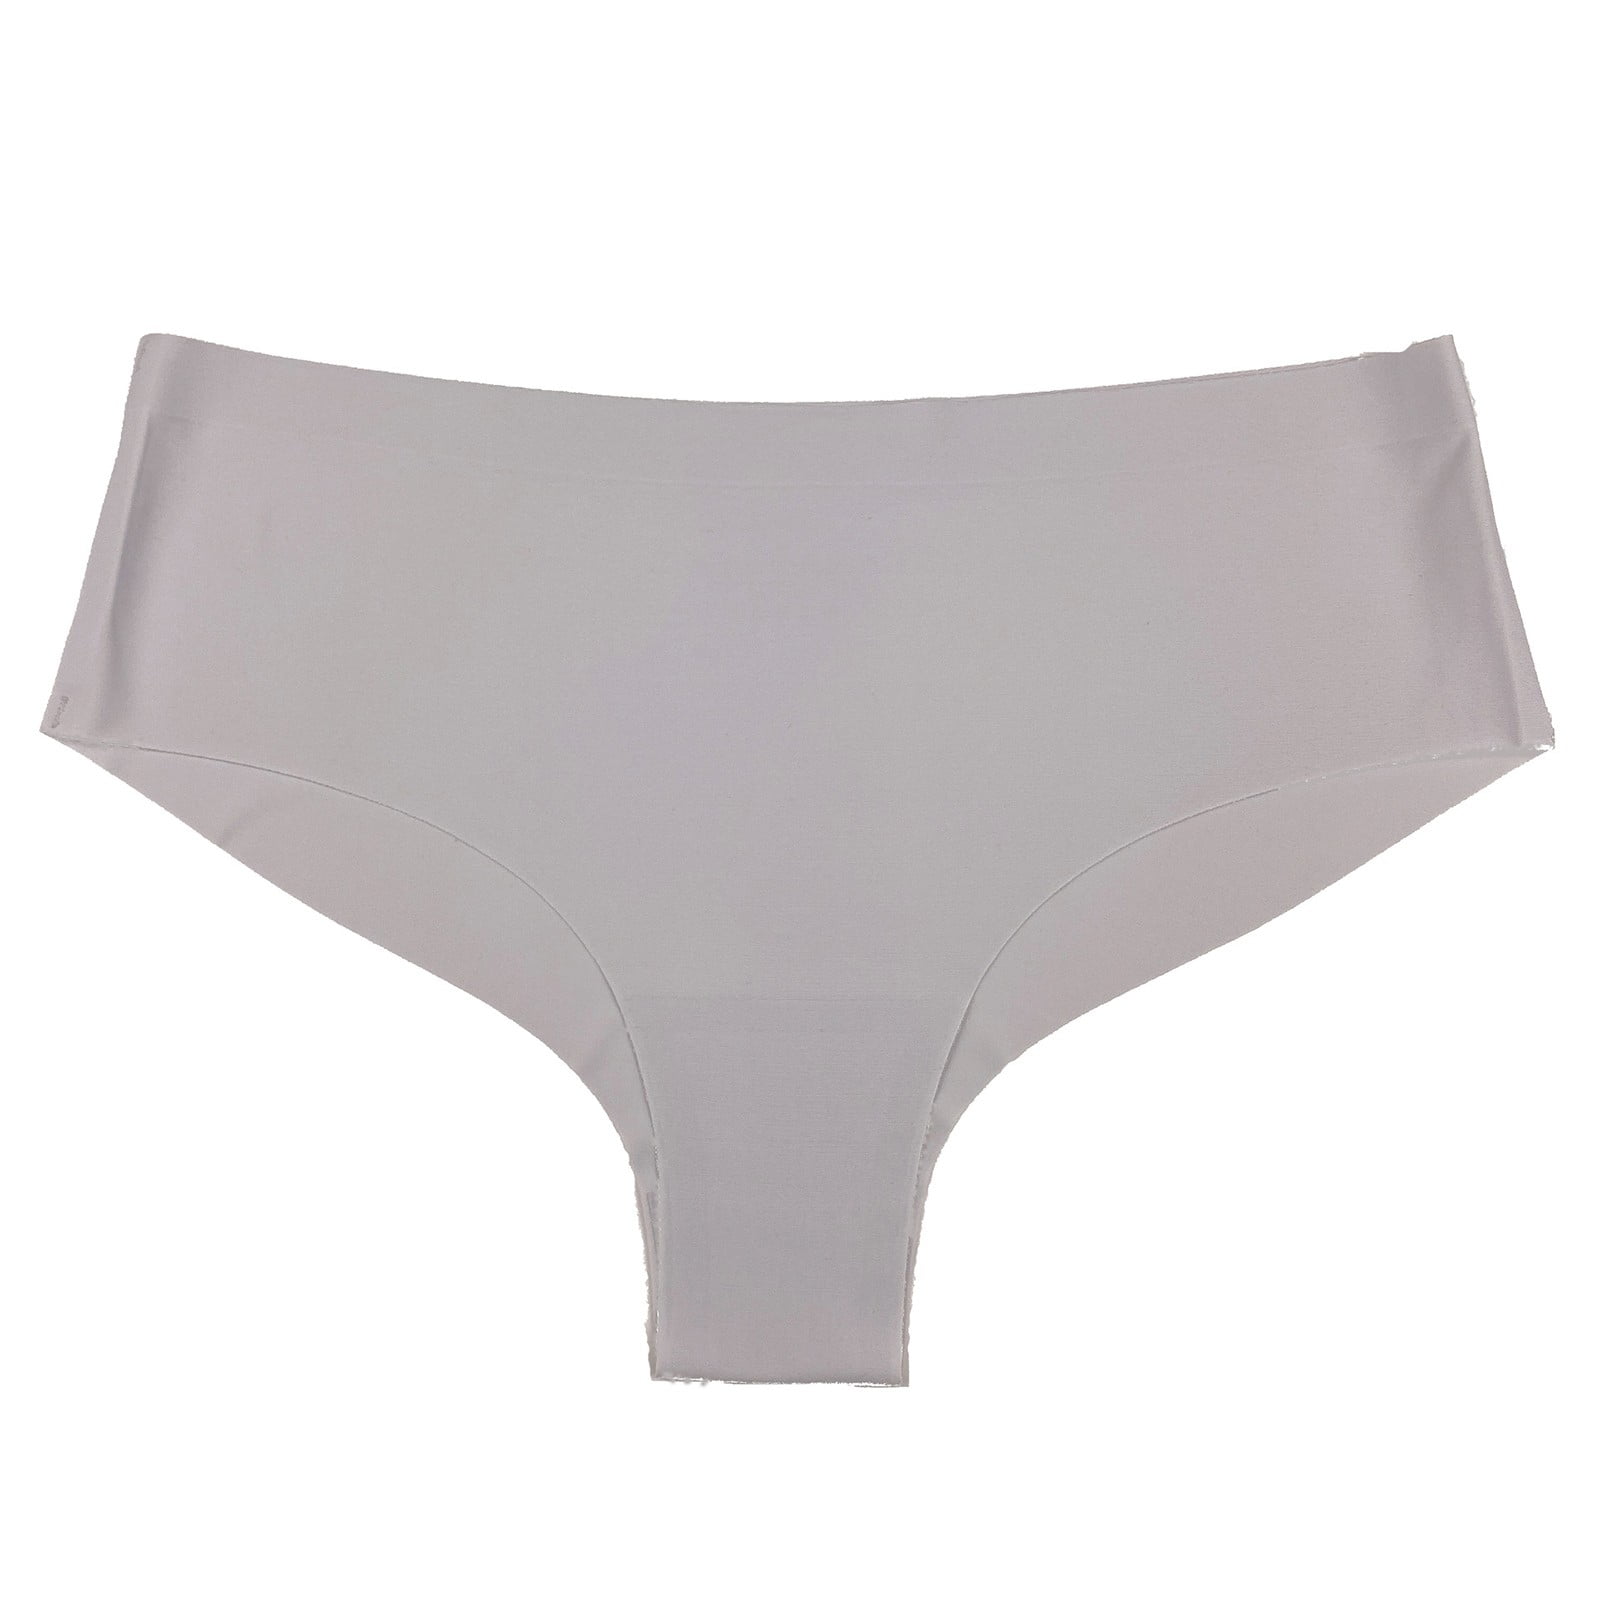 5 Pack Ladie Teens Seamless Underwear Panties Ice Silk Low Cut